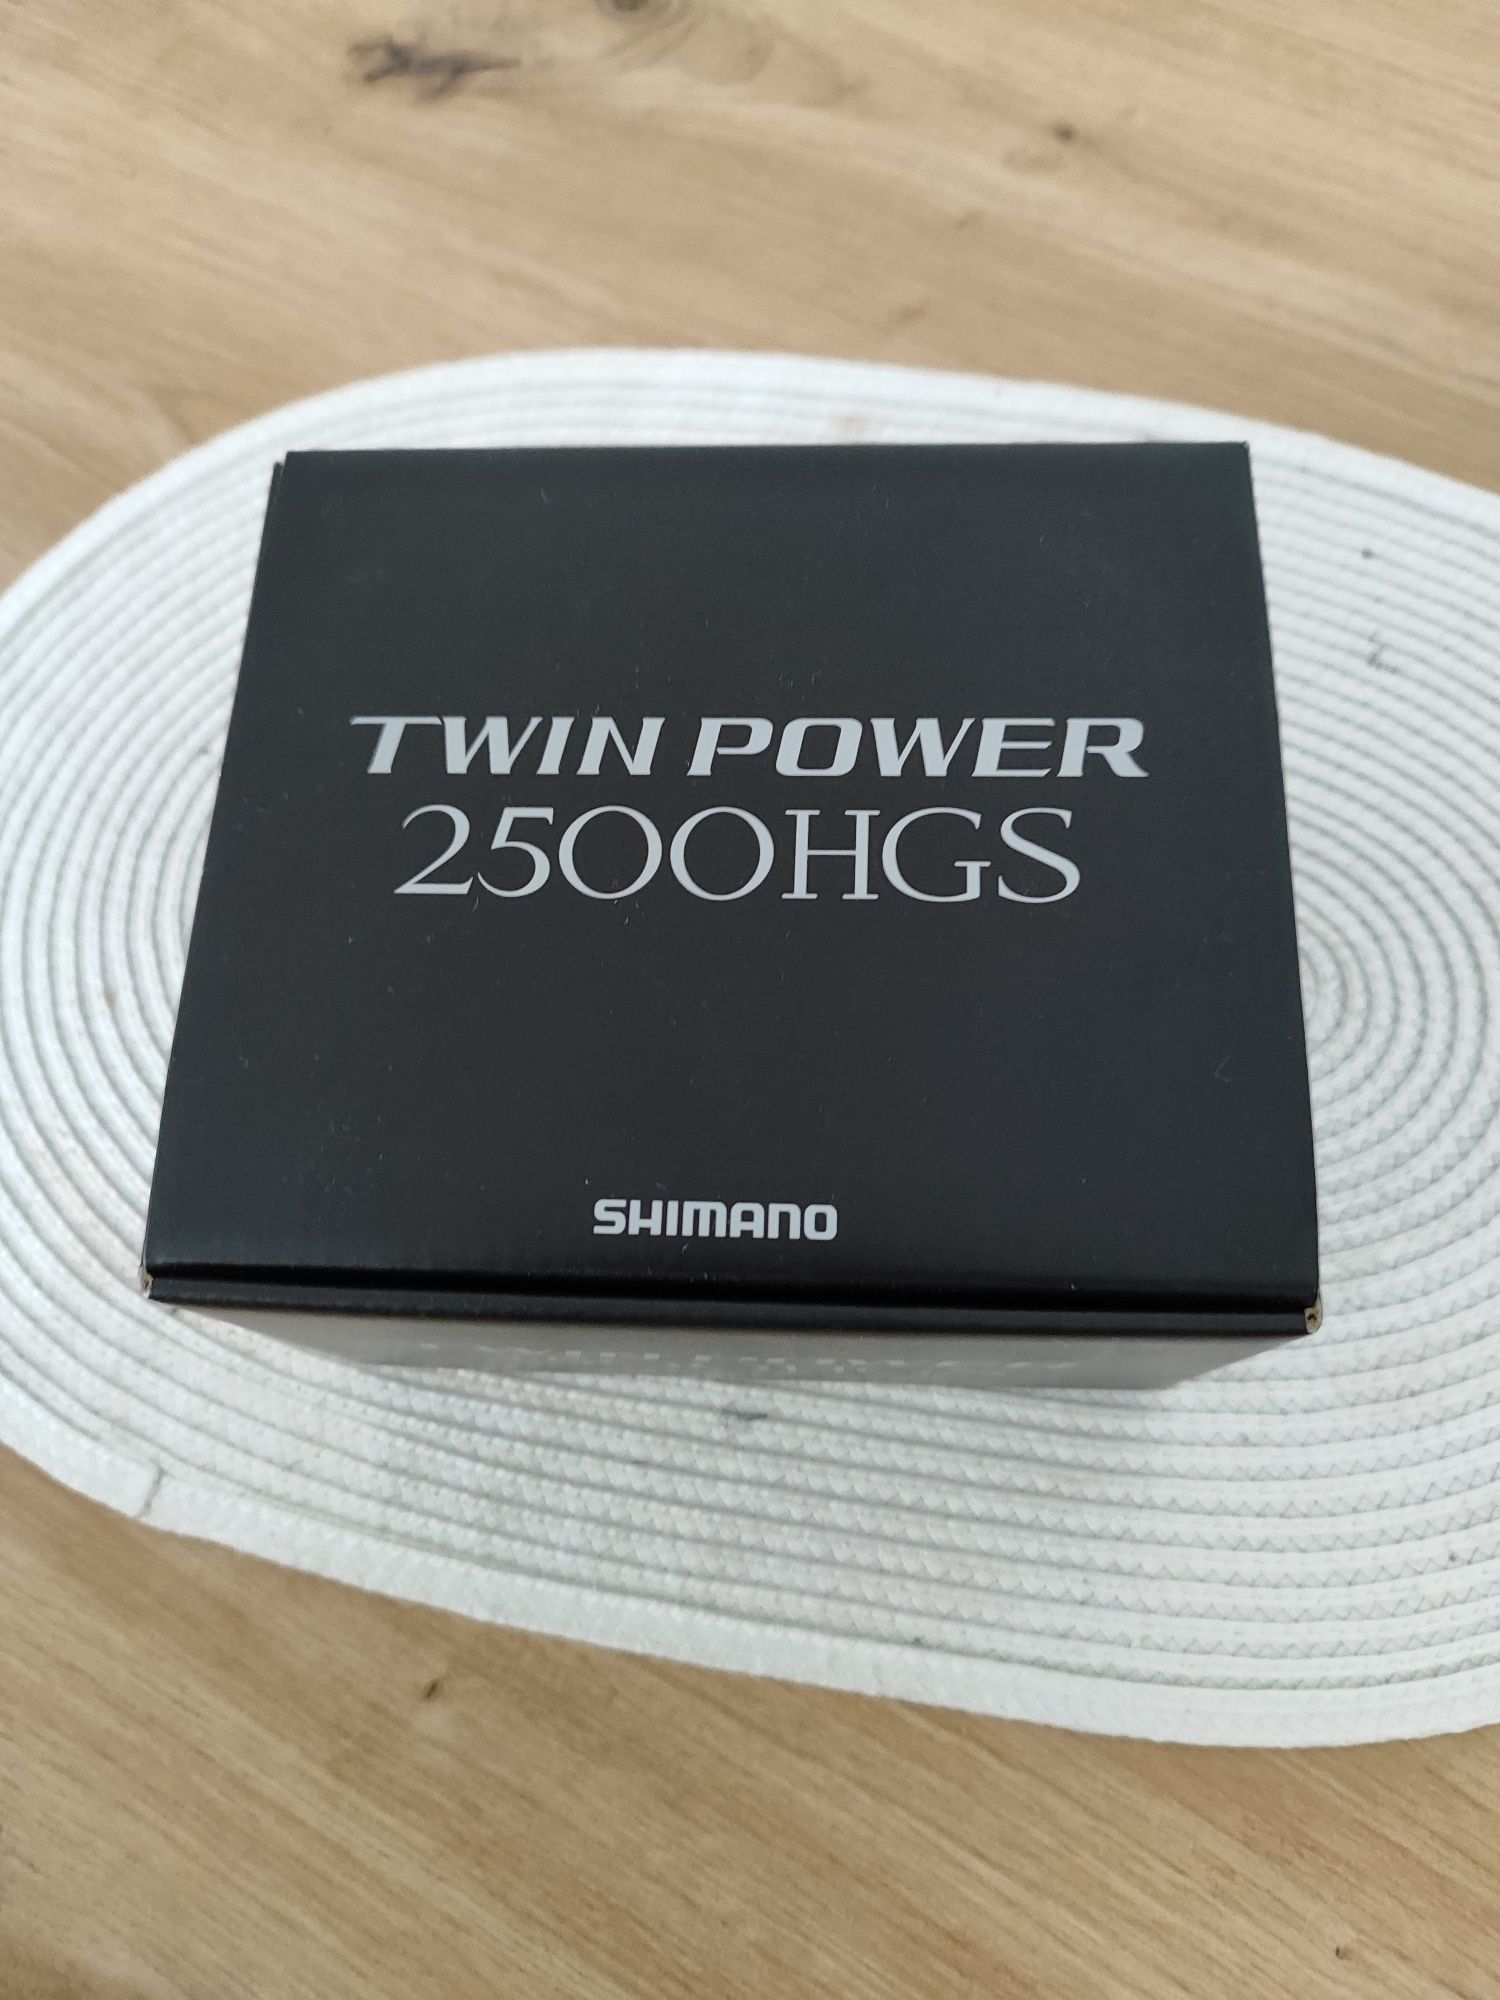 Shimano Twin power 2500HGS